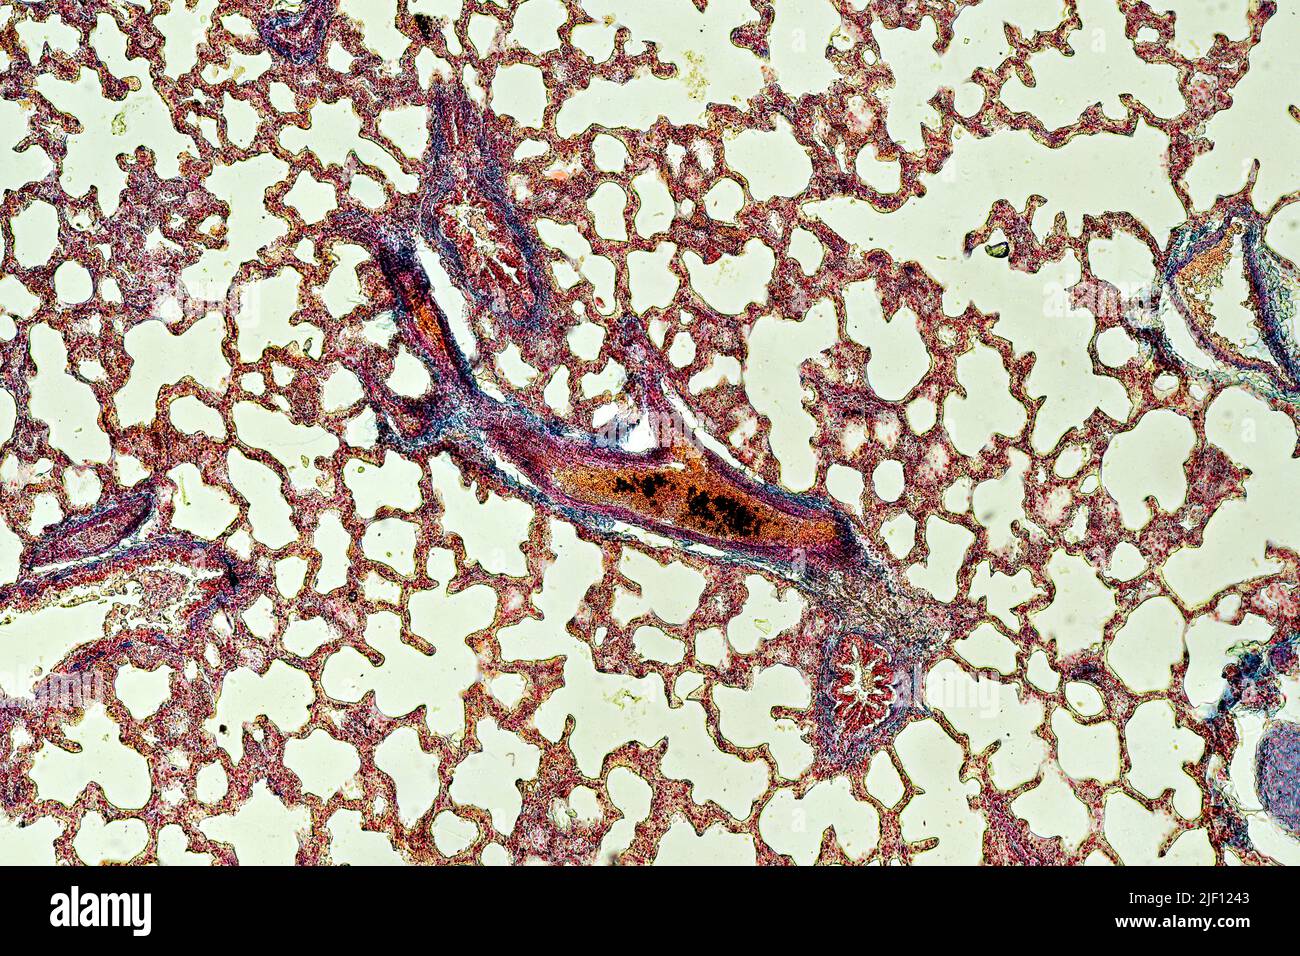 Sezione trasversale del polmone con bronchioli, alveoli e vasi sanguigni visibili. Foto Stock